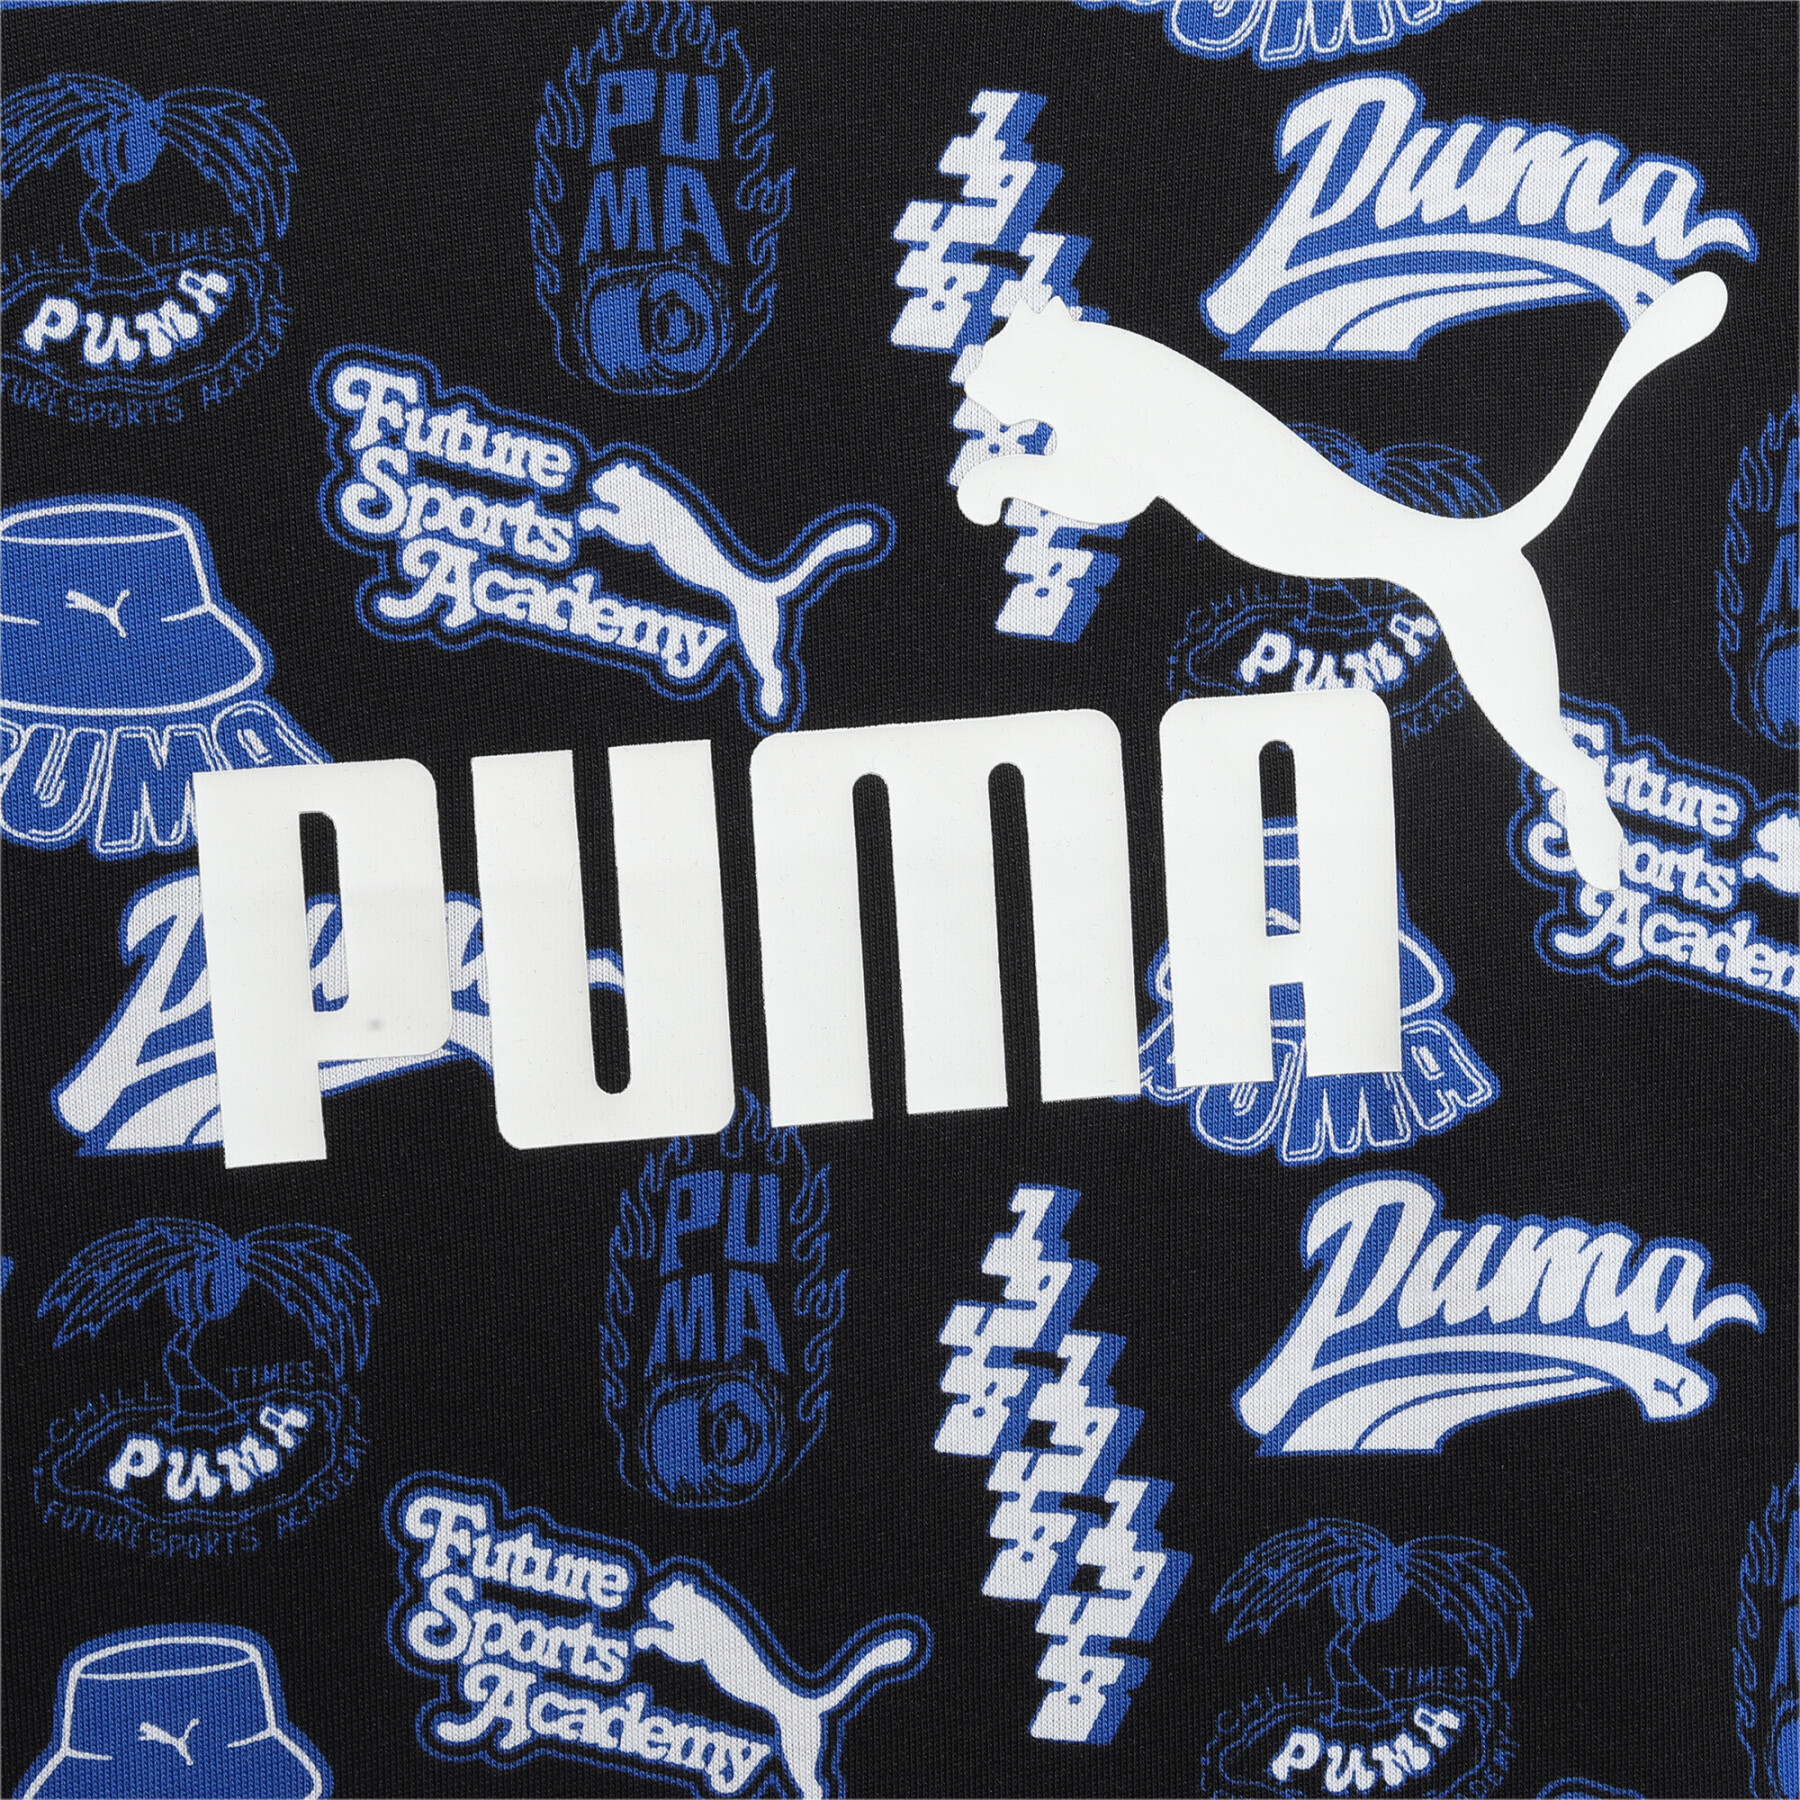 T-Shirt mit Motiv Kind Puma All Over 90's ESS+